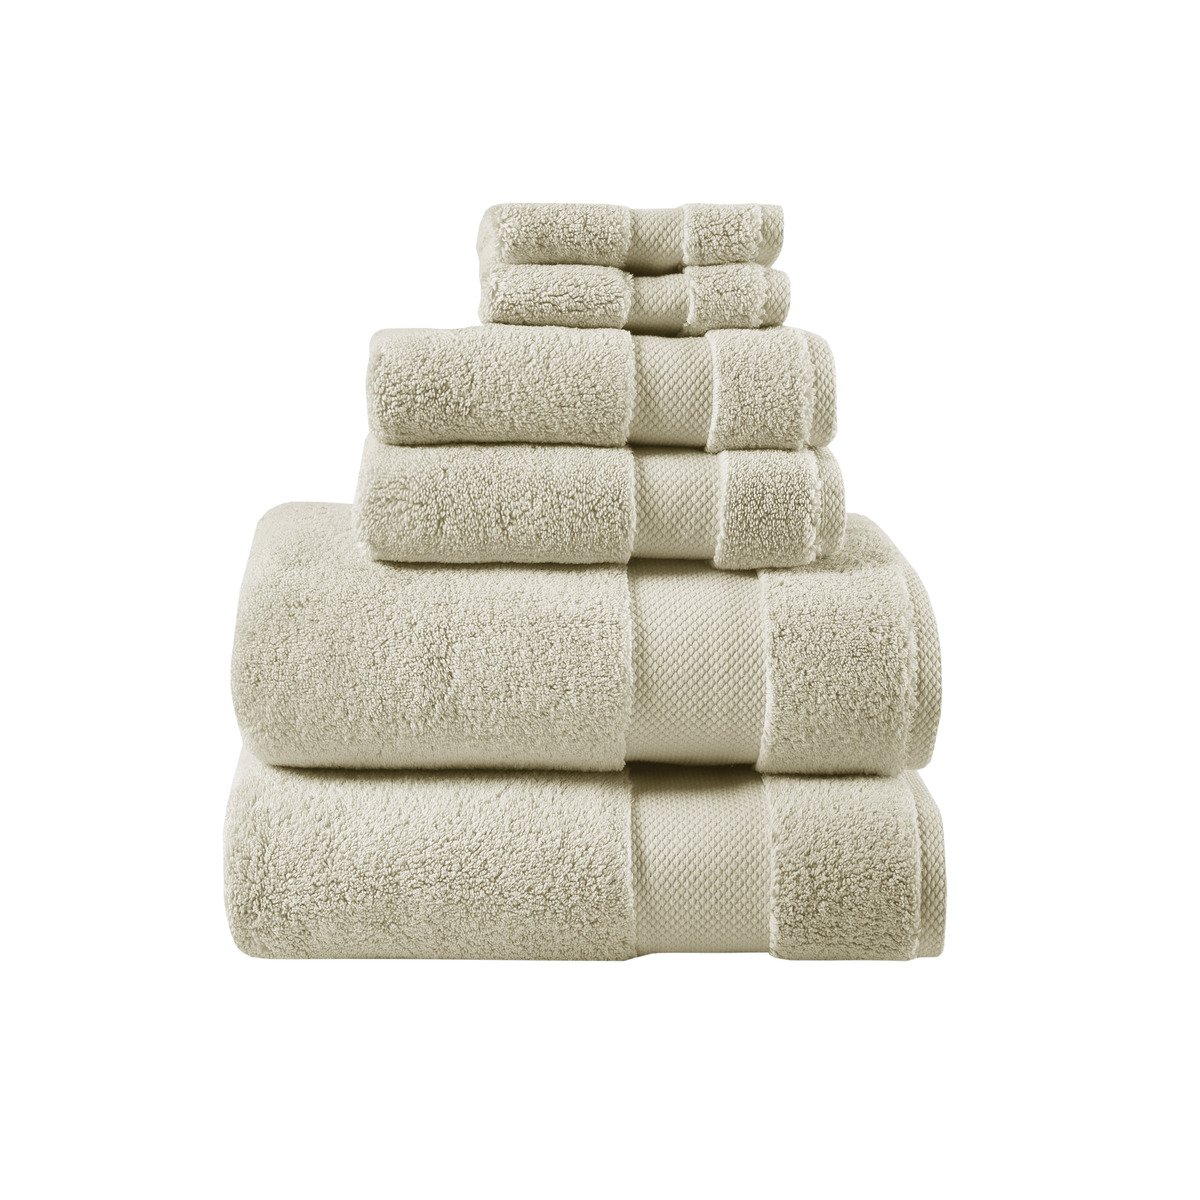 Gracie Mills   Forrest Splendor 1000gsm Cotton 6 Piece Towel Set - GRACE-12492